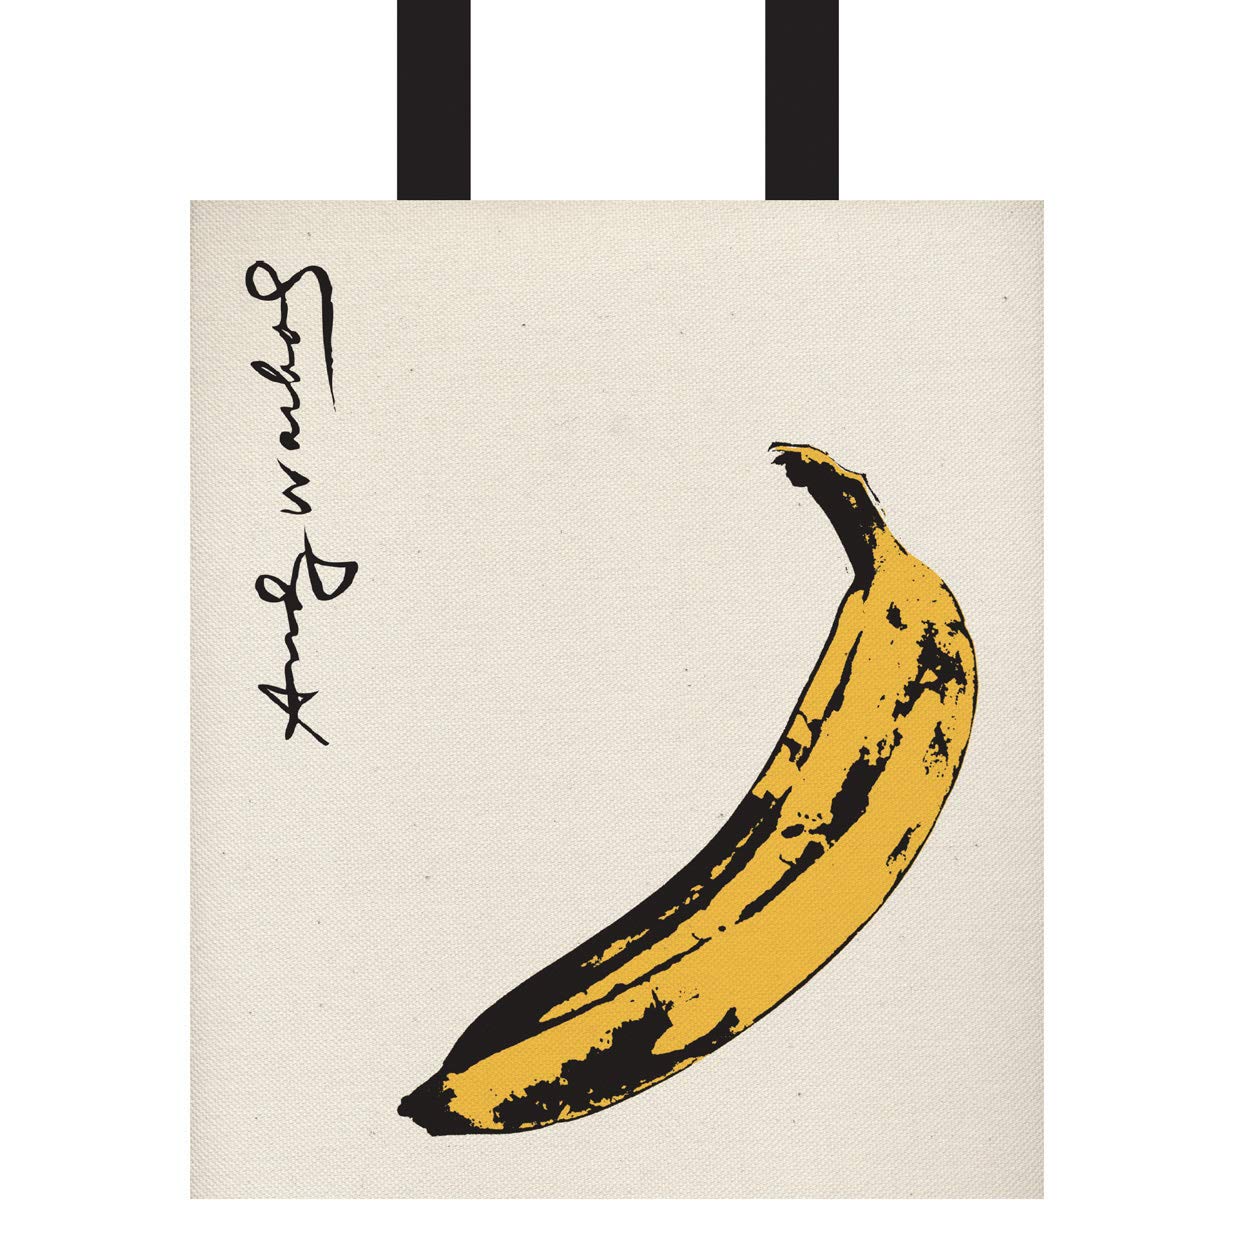 Andy Warhol: Banana Tote Bag